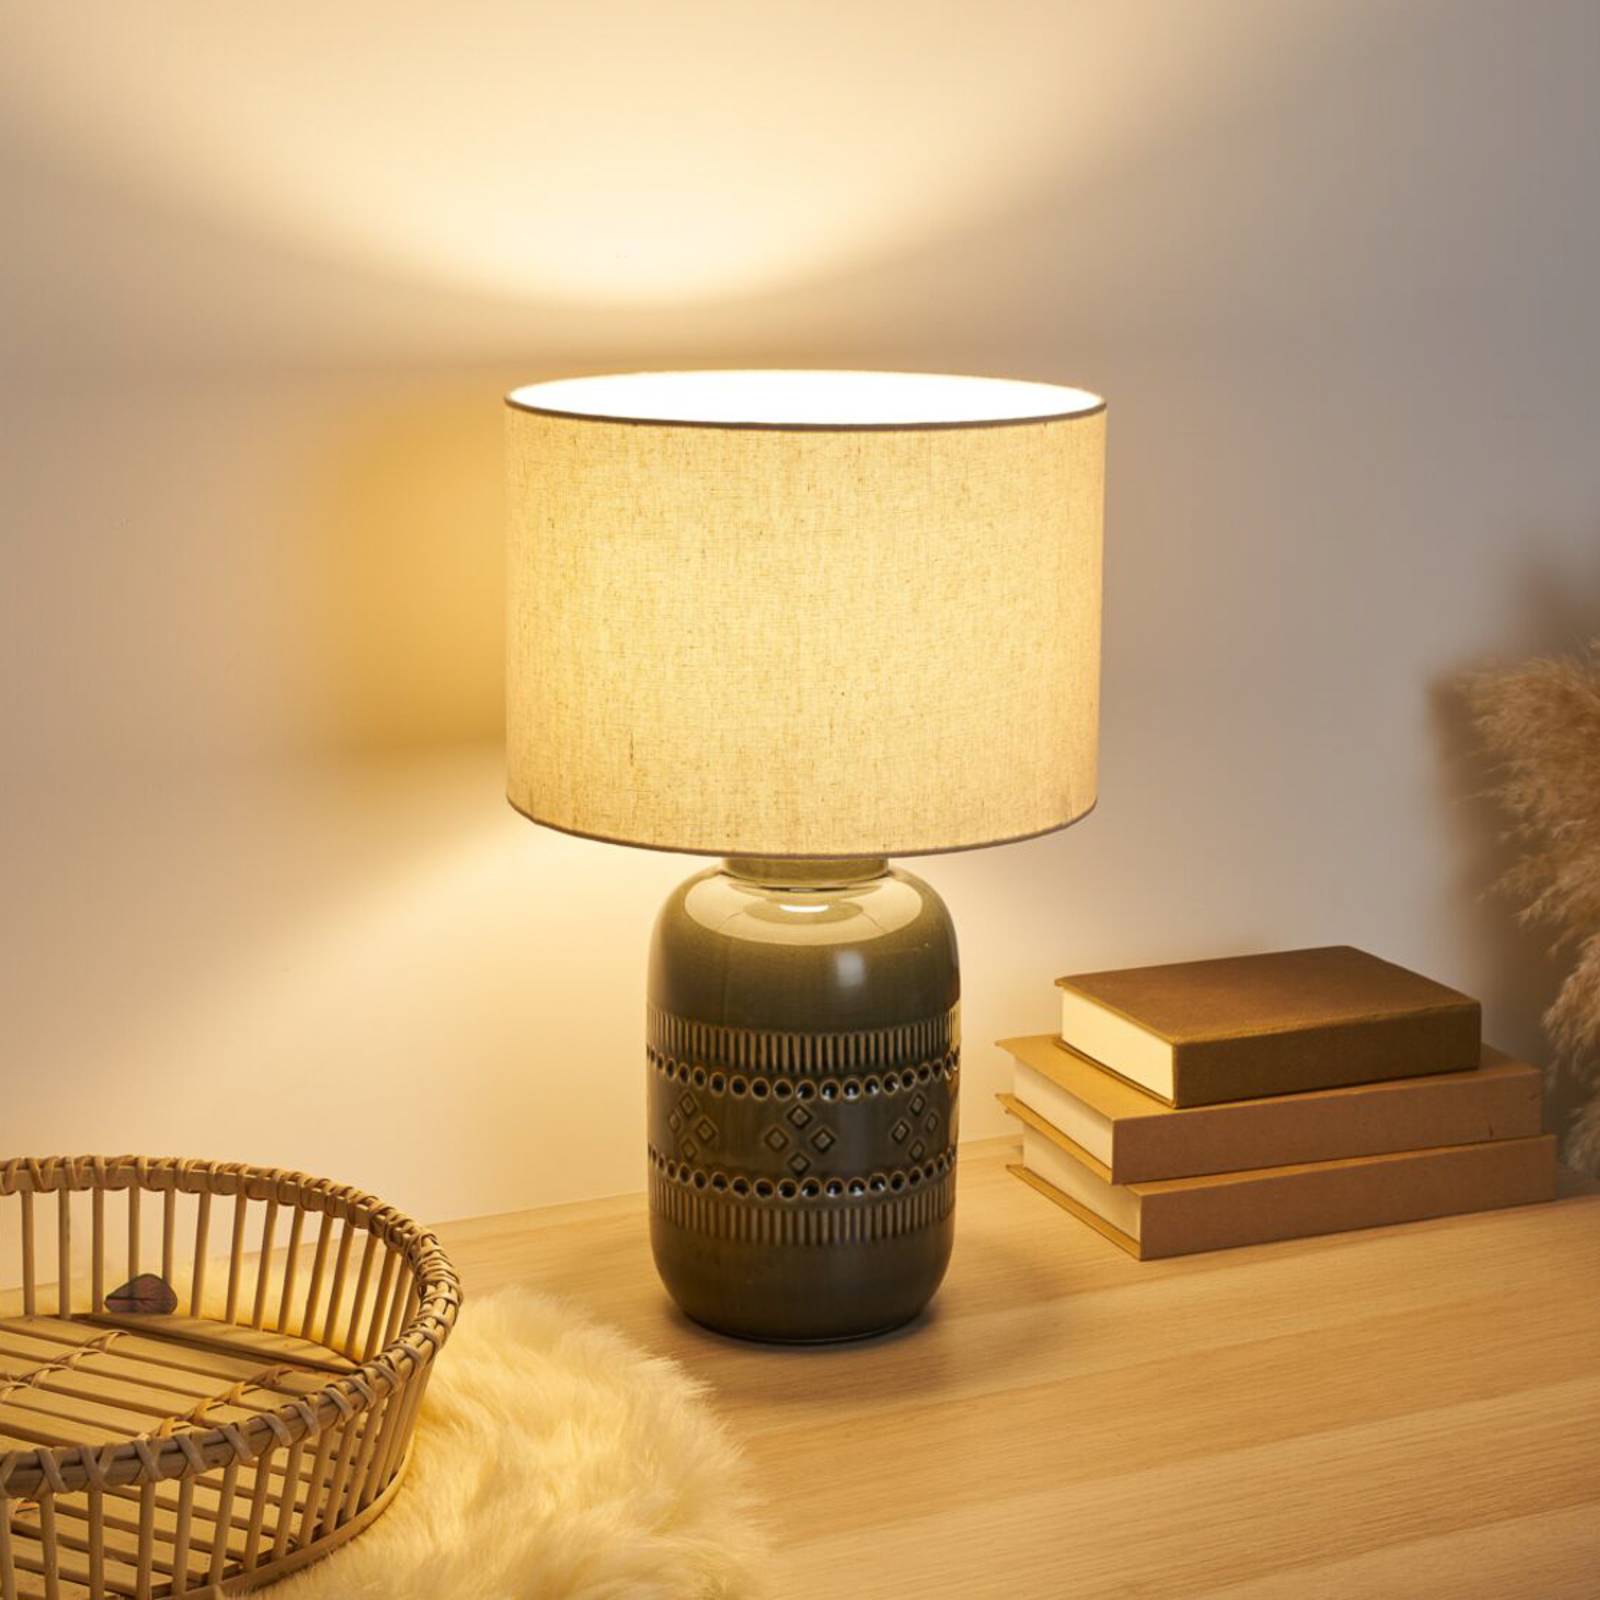 Pauleen Gleaming Beauty bordlampe med keramikfod